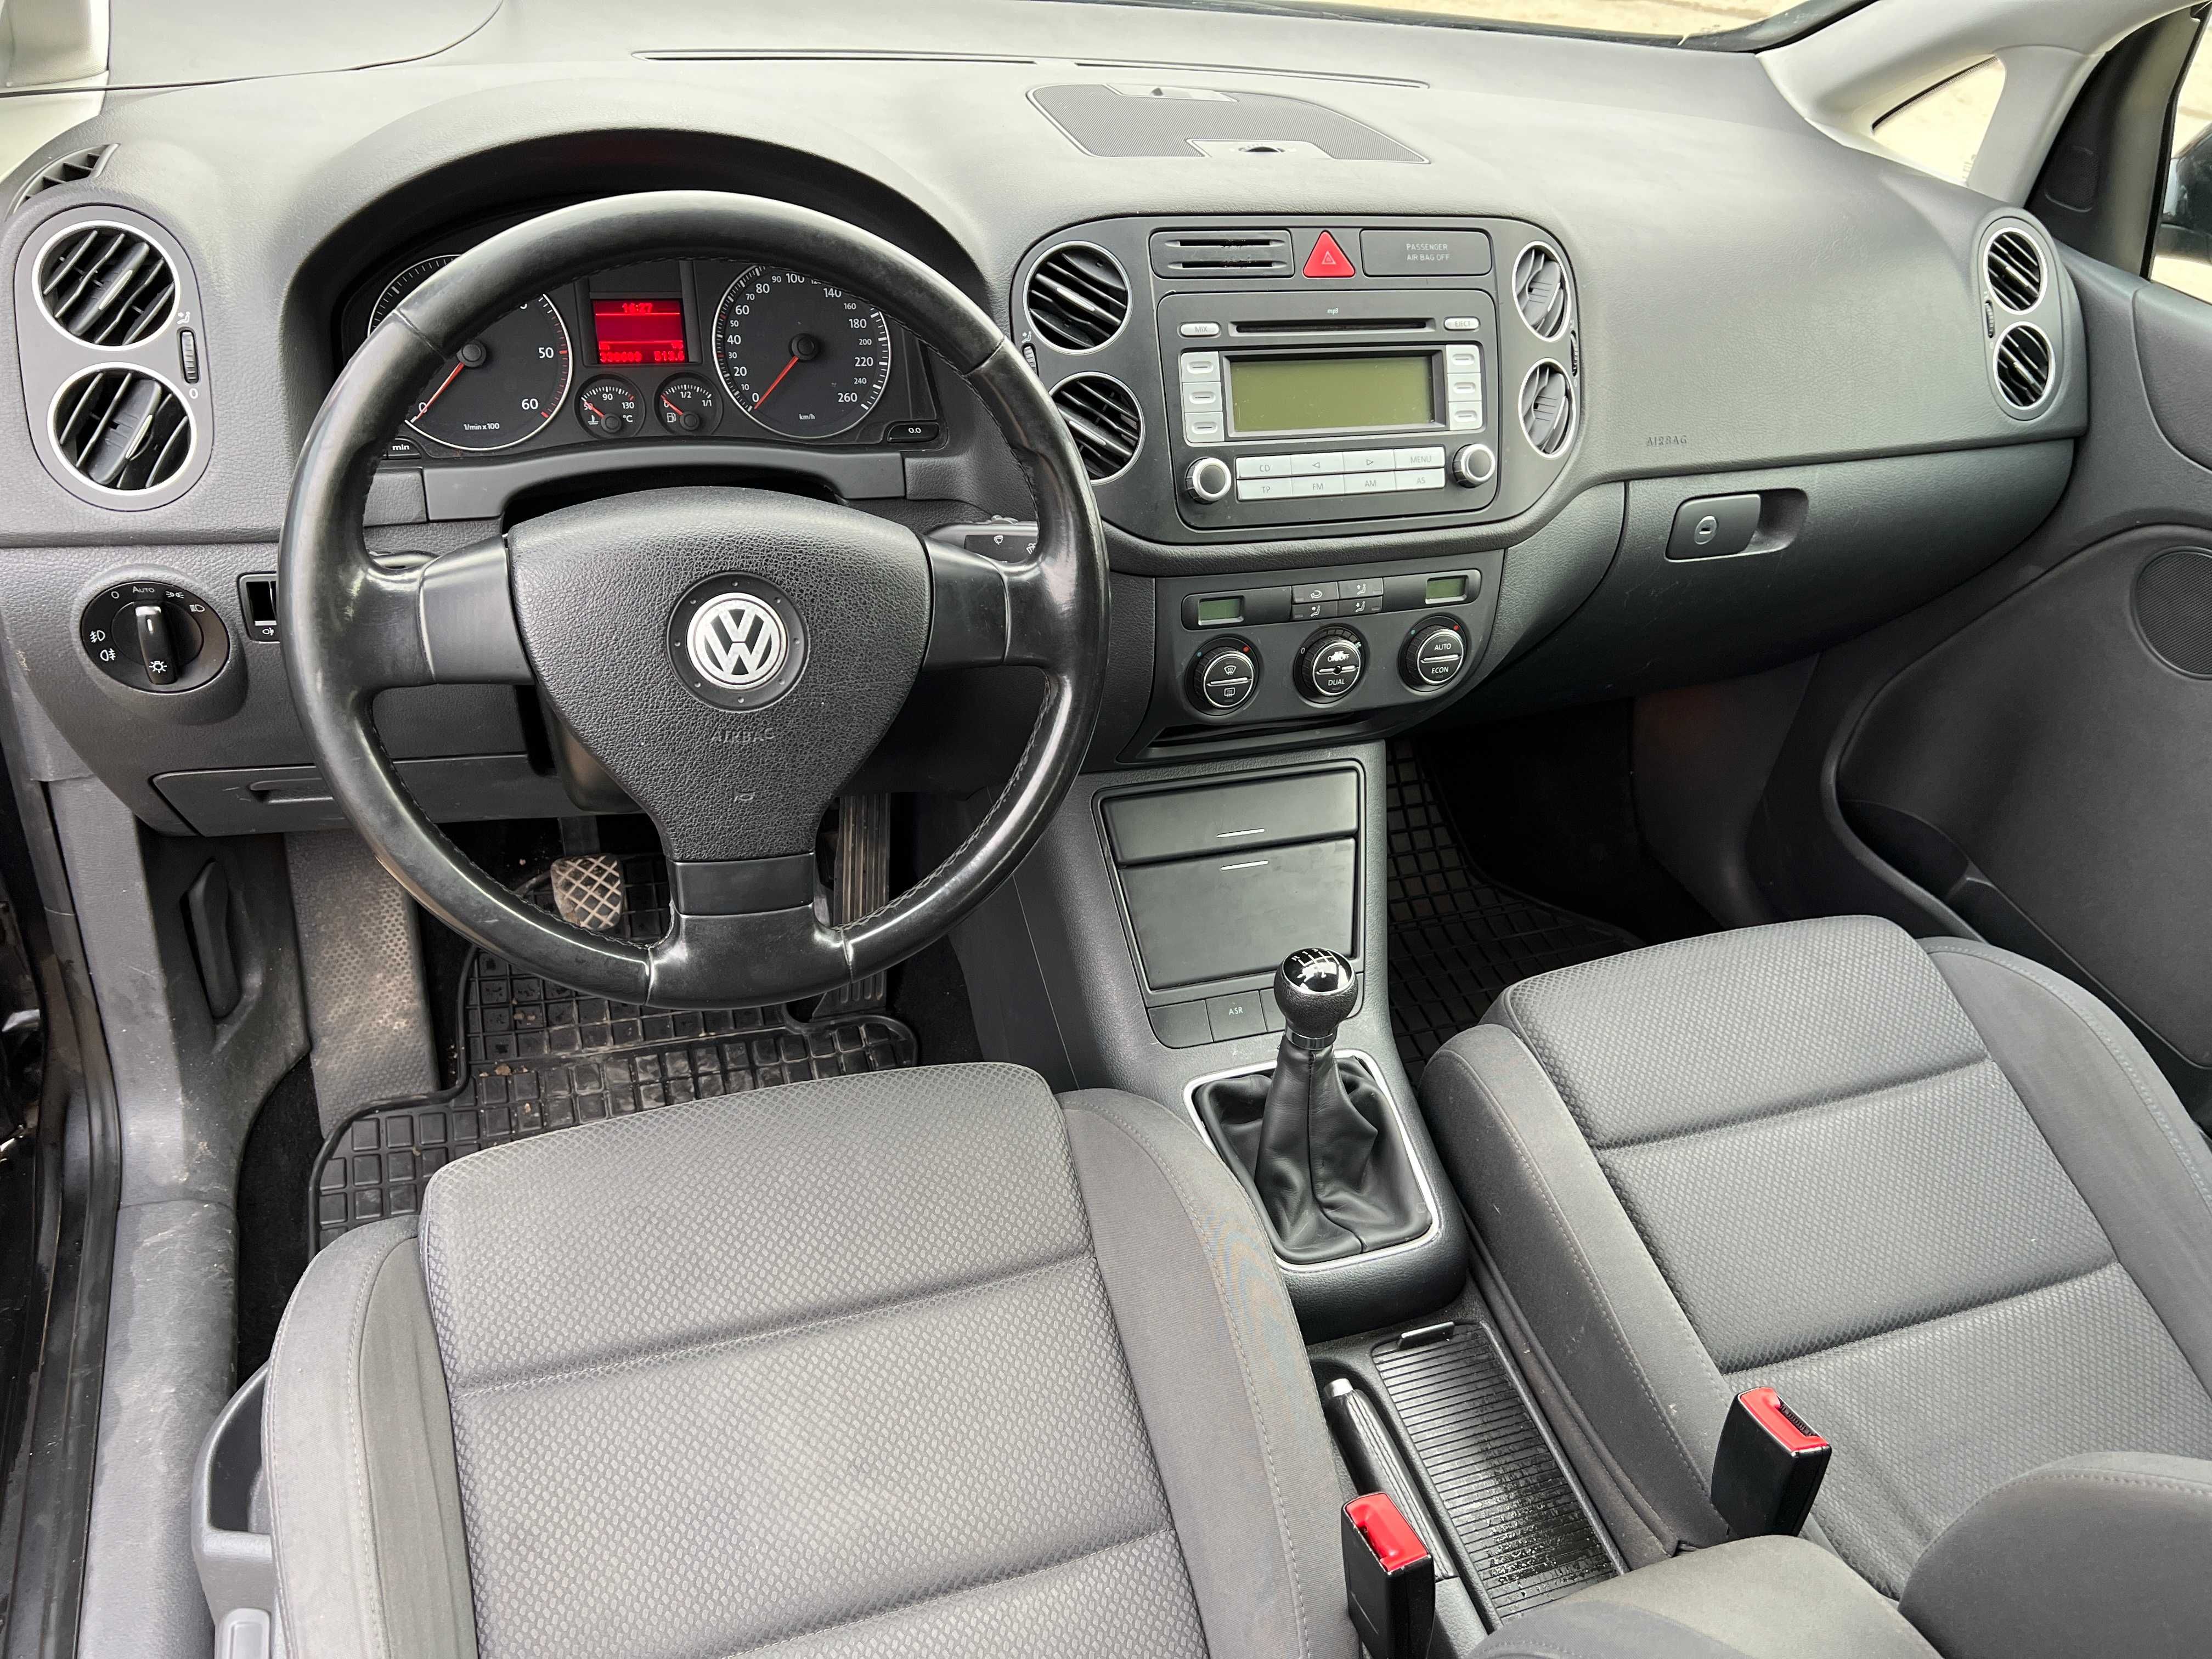 Inchiriez Auto fara sofer RENT SEAT Leon 1.9 TDI ,VW GOLF Plus 2.0 TDI